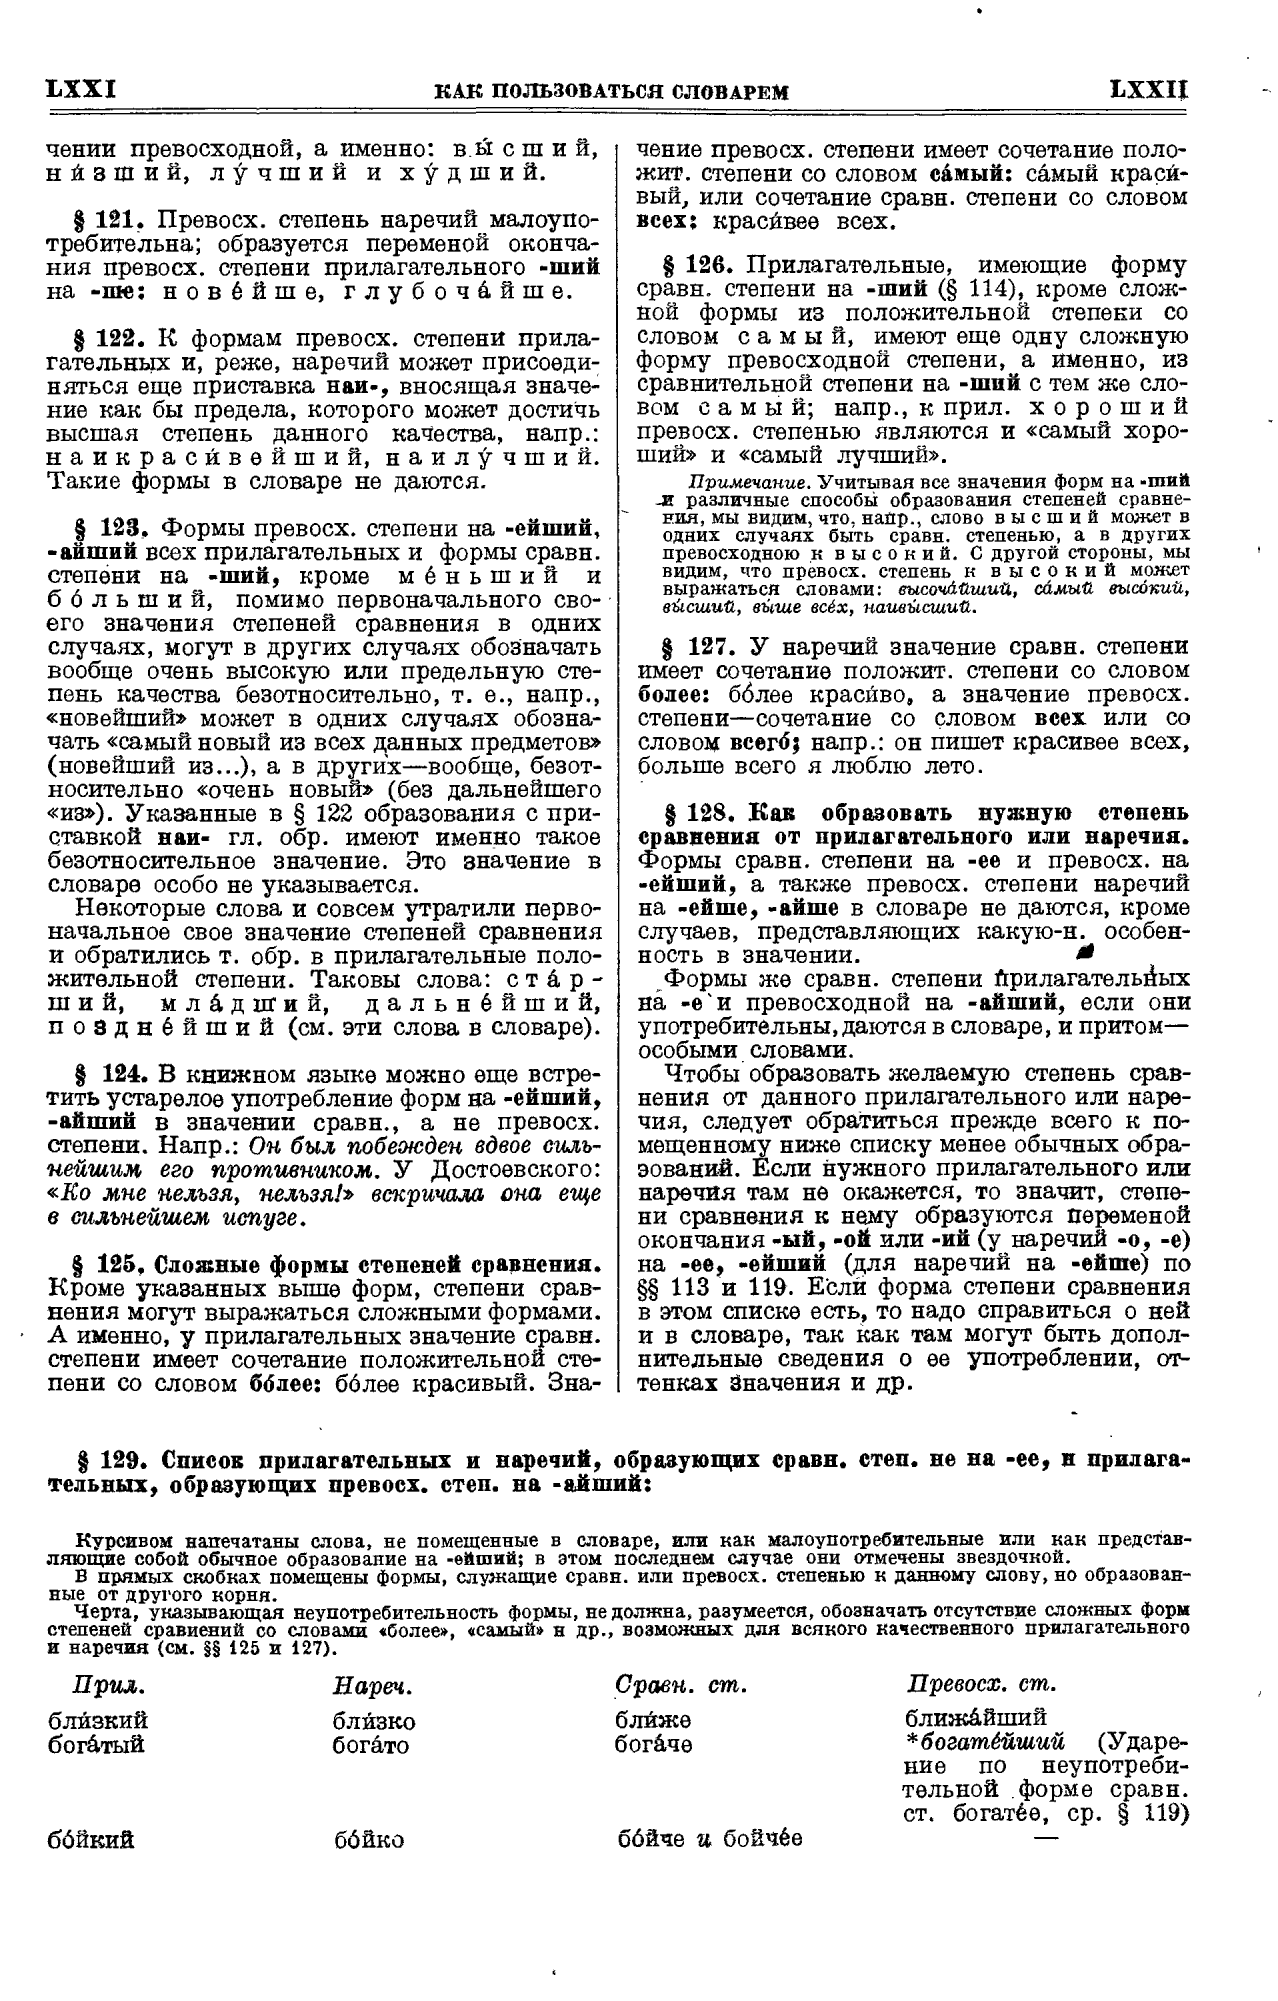 Фотокопия pdf / скан страницы 36 толкового словаря Ушакова (том 1)